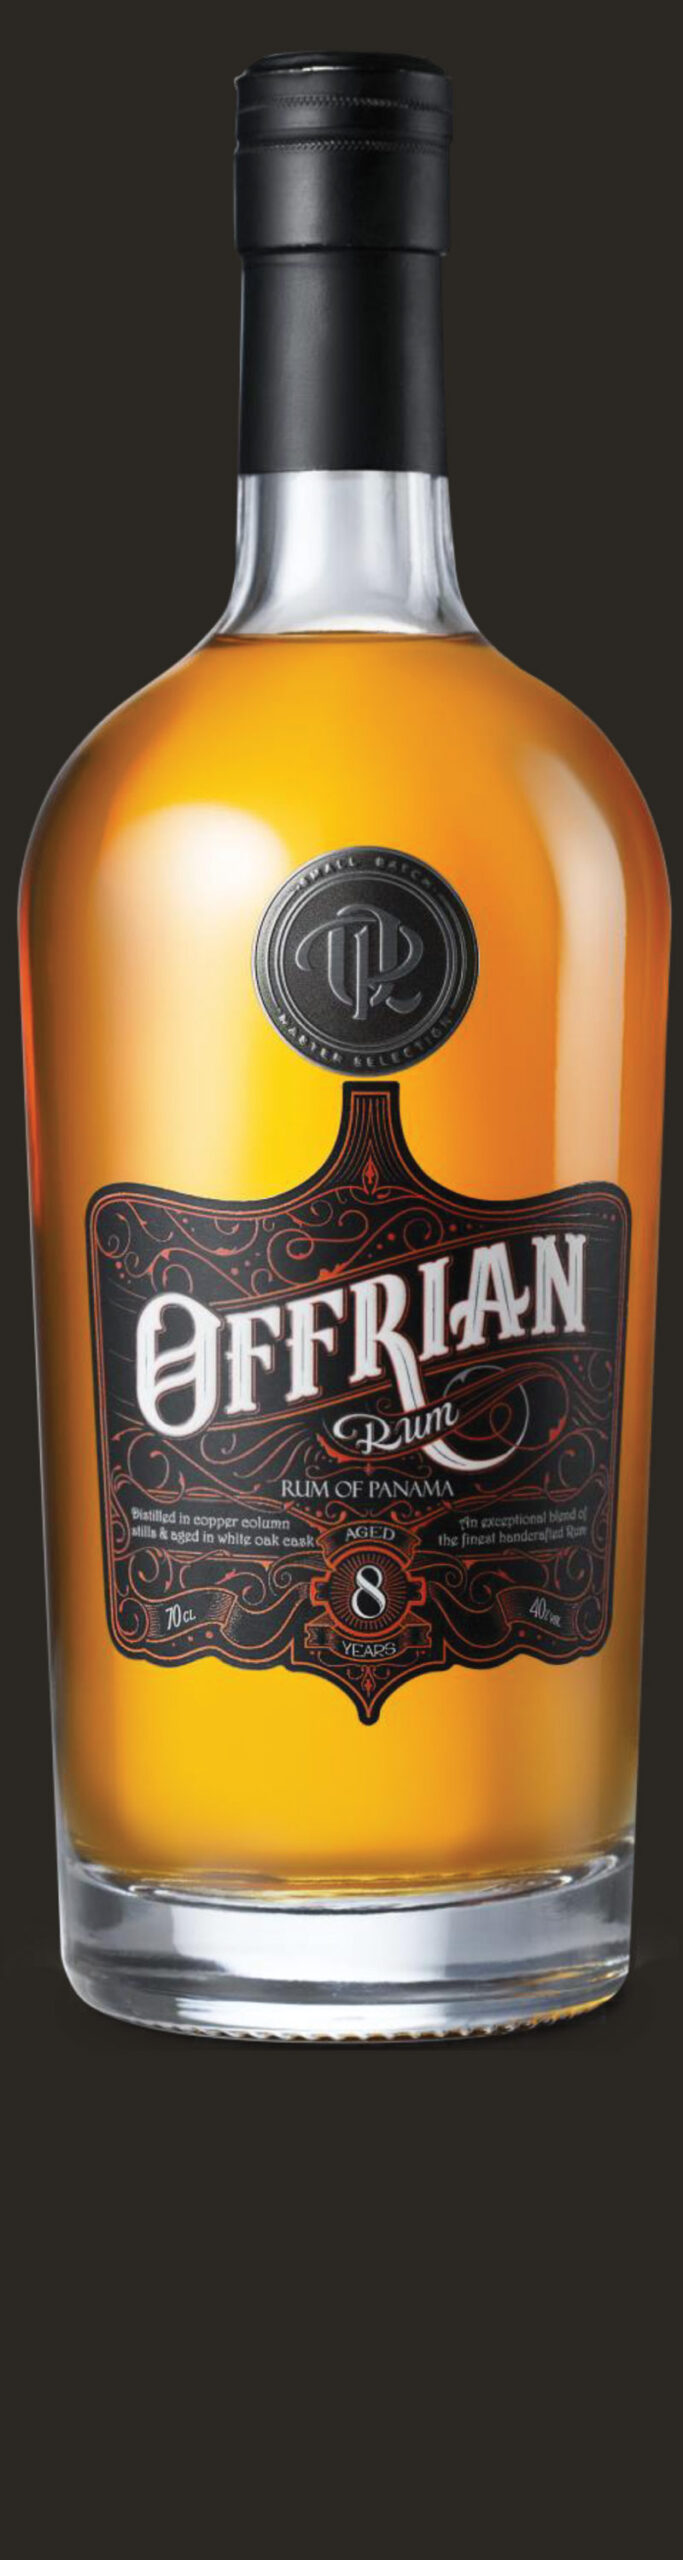 Offrian Rum 8 Años